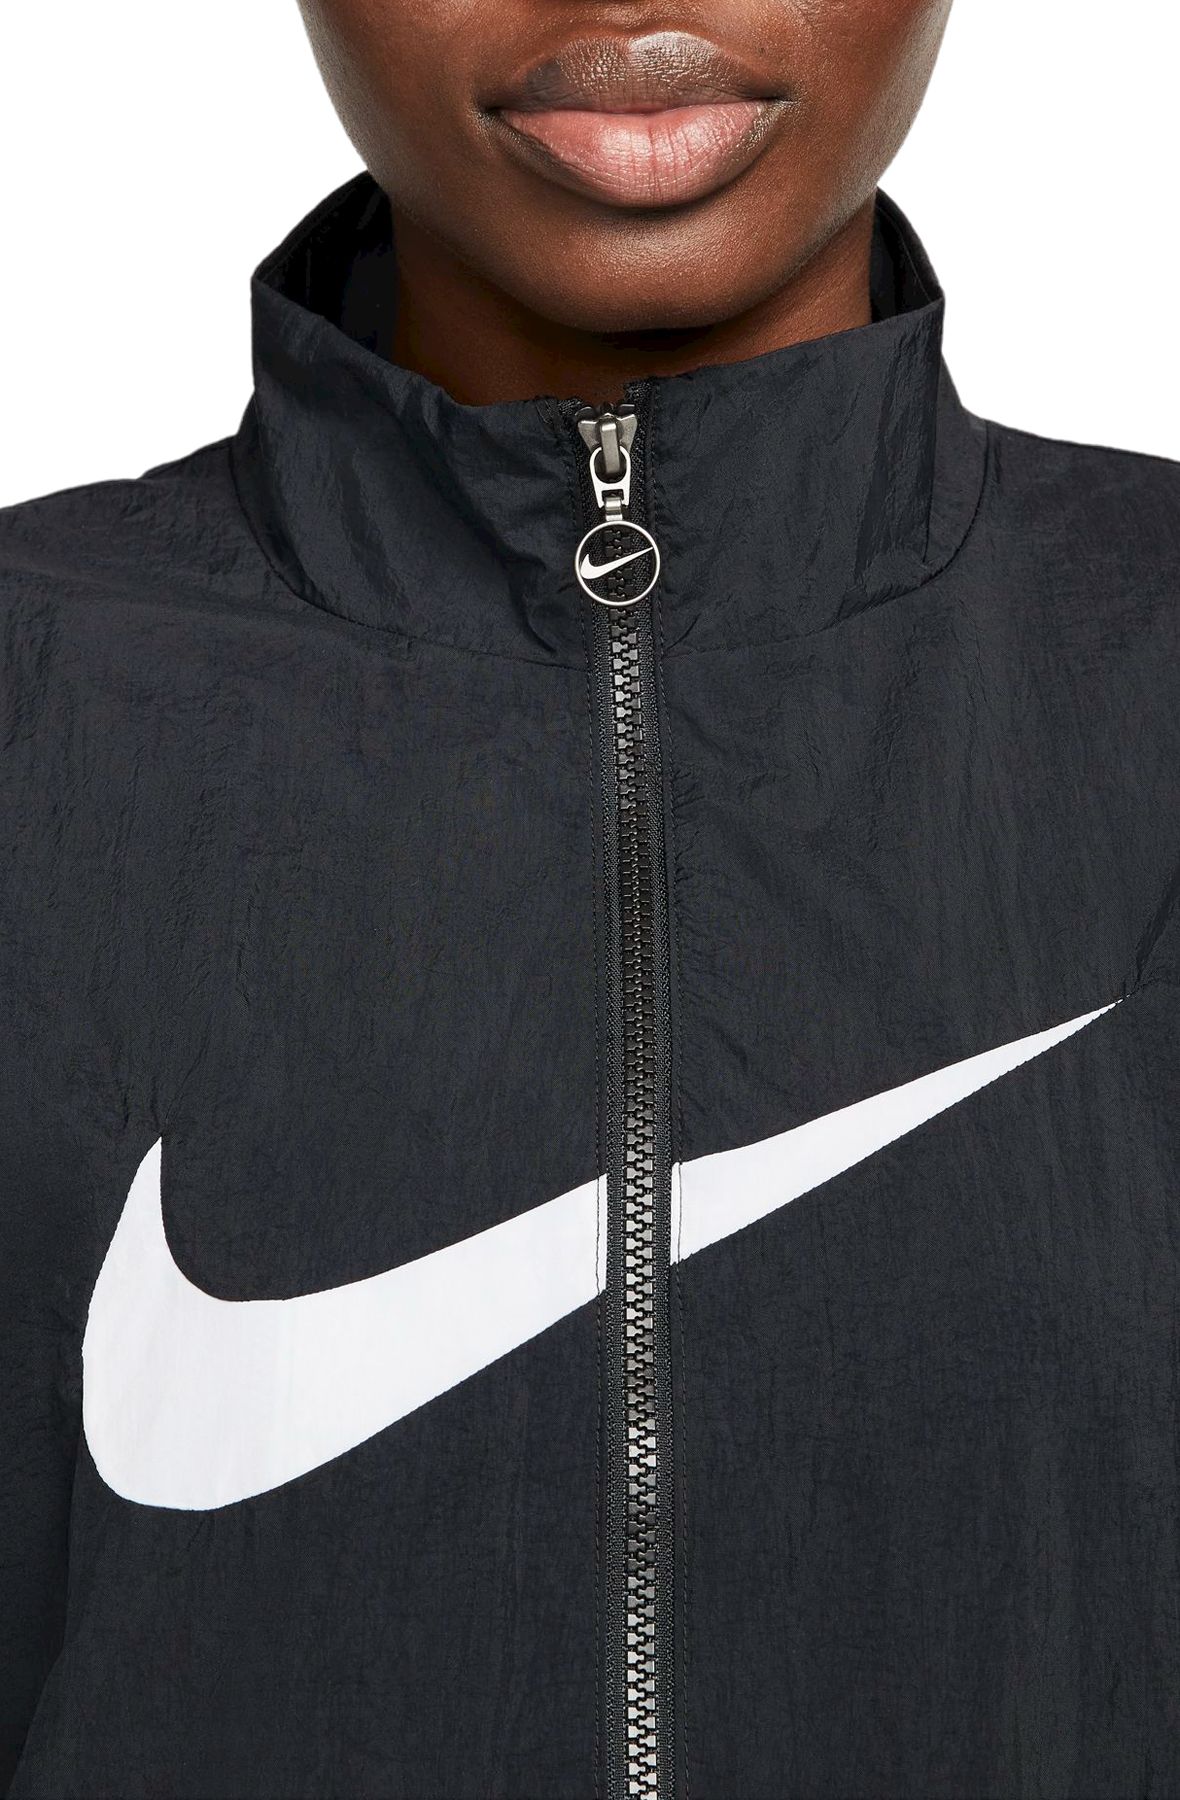 Nike Sportswear Essential Women's Woven Jacket, Black/White, Large